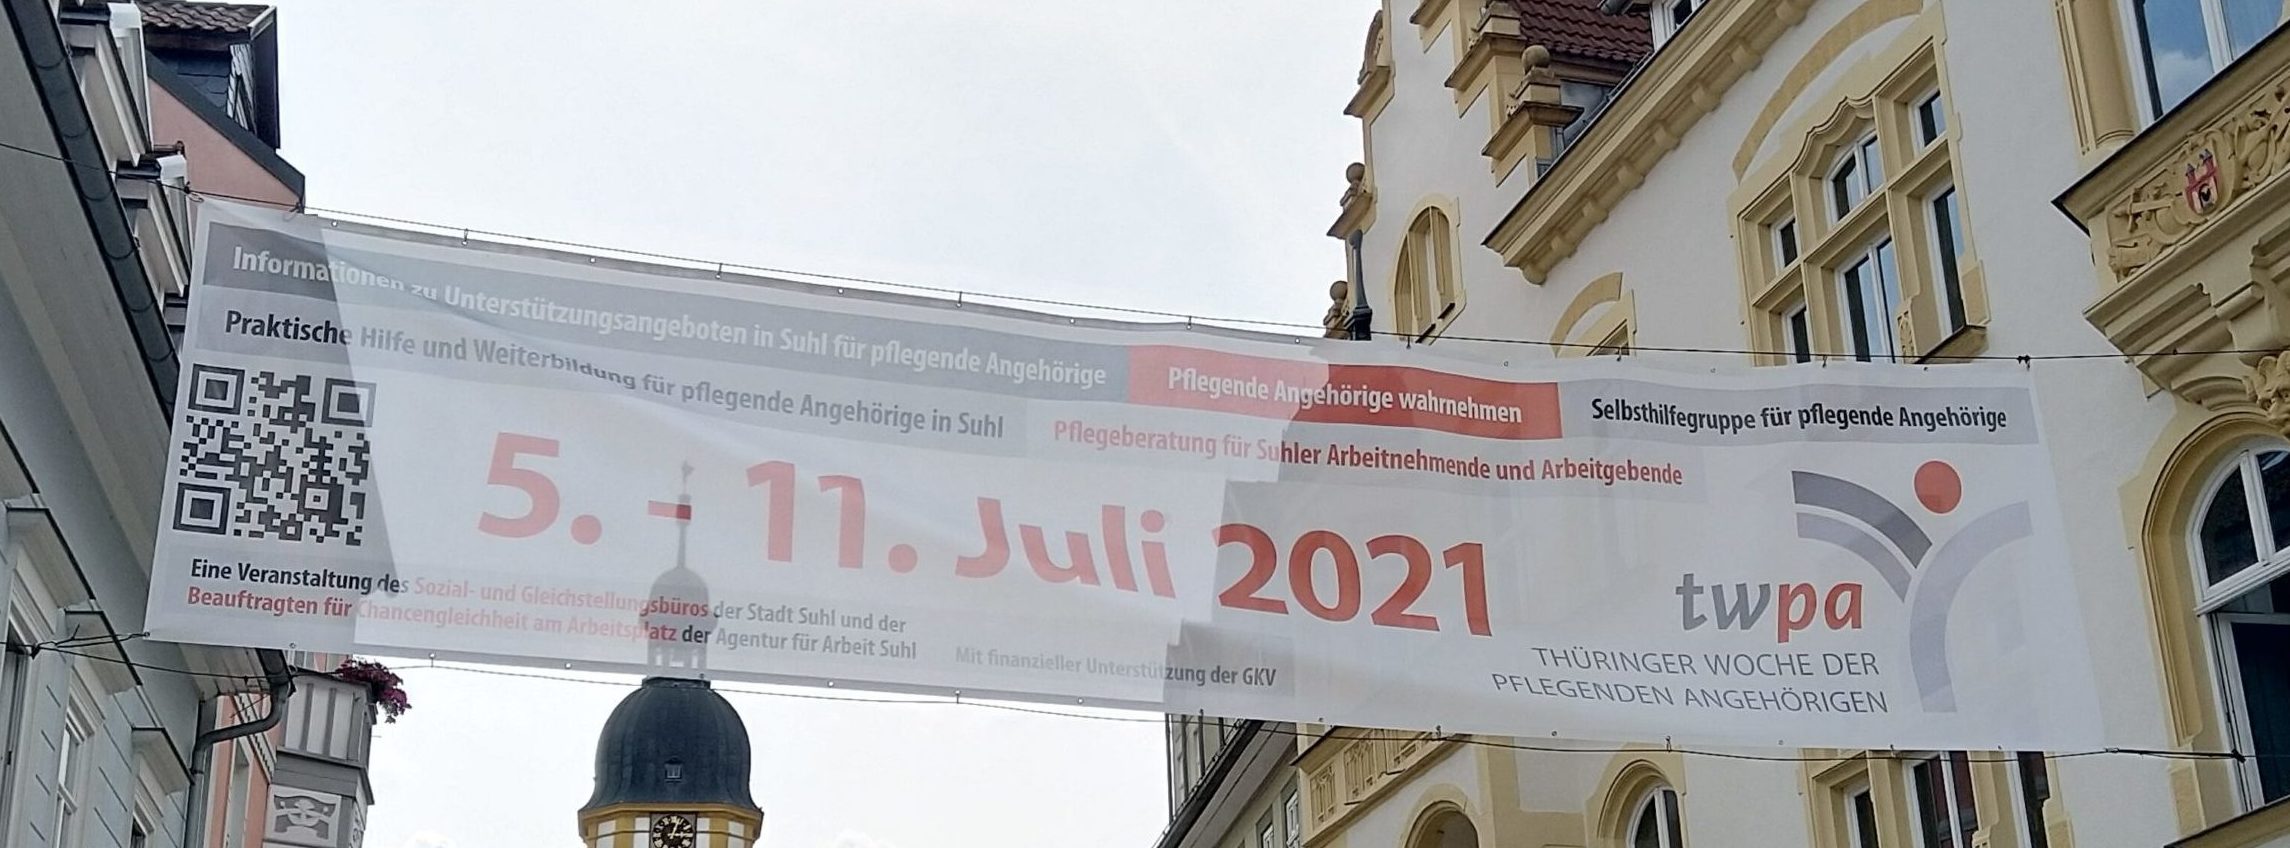 Banner über dem Steinweg zur Thüringer Woche der Pflegenden Angehörigen